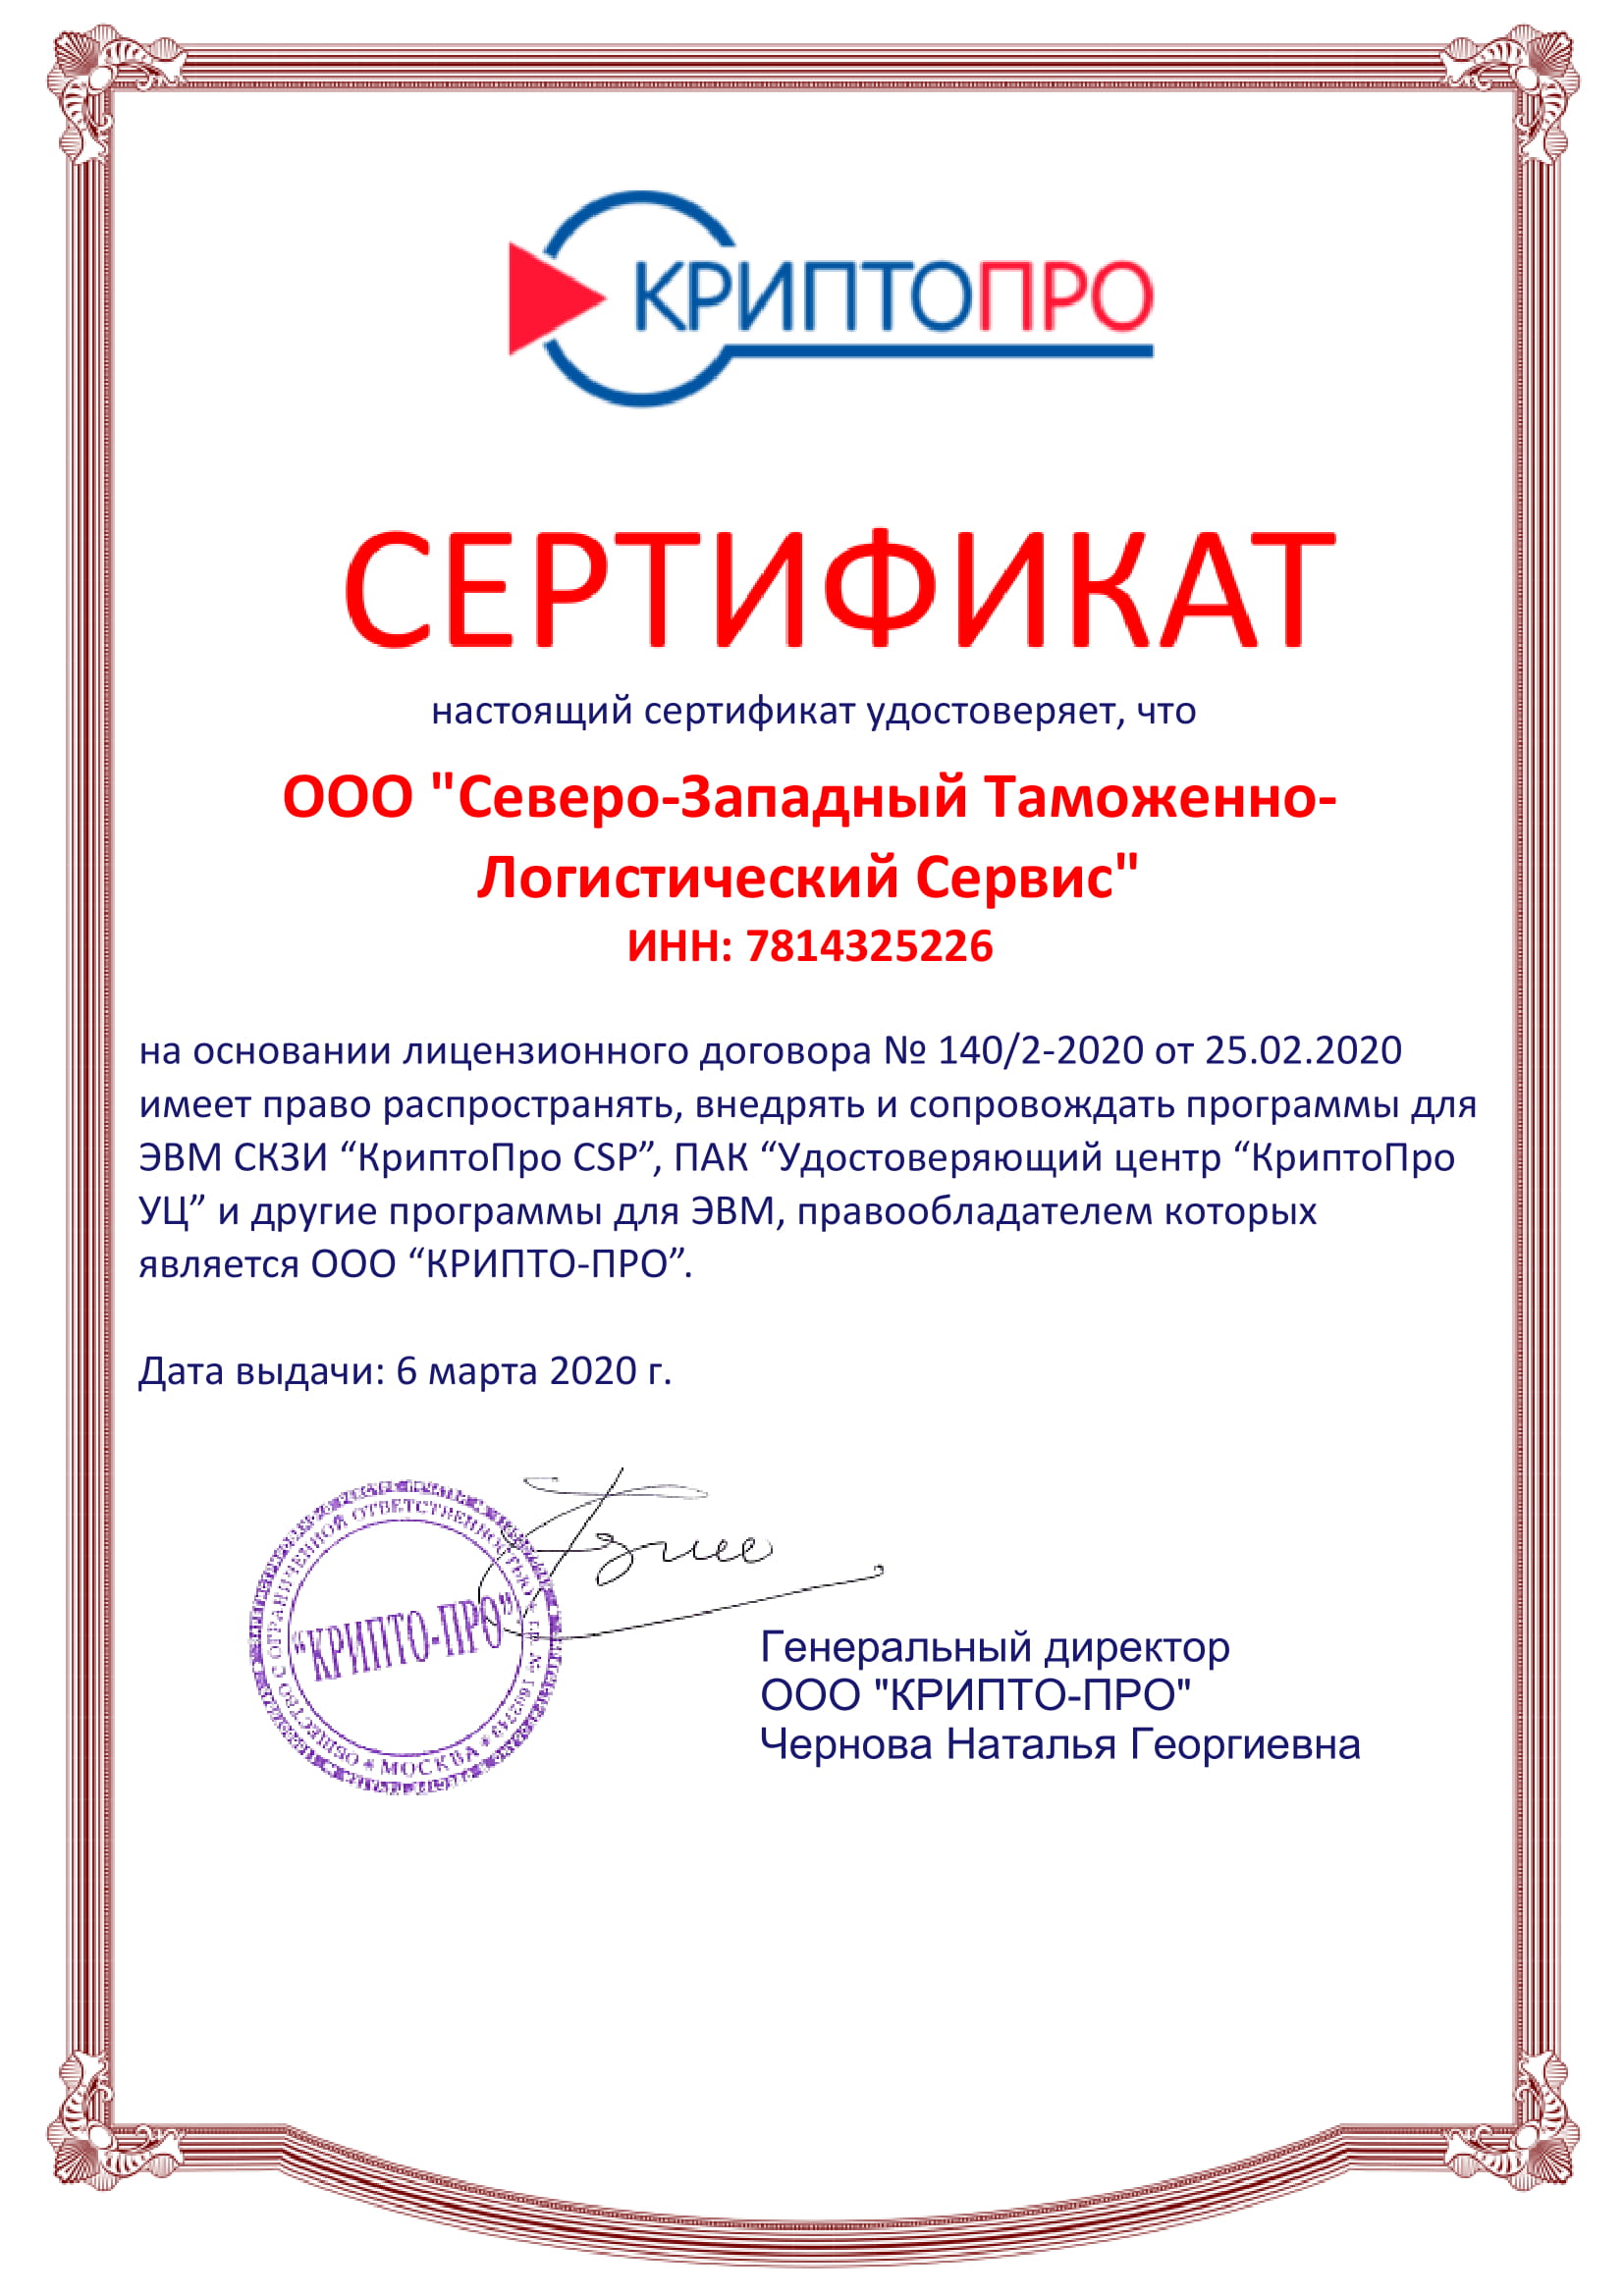 сертификат партнера КриптоПРО